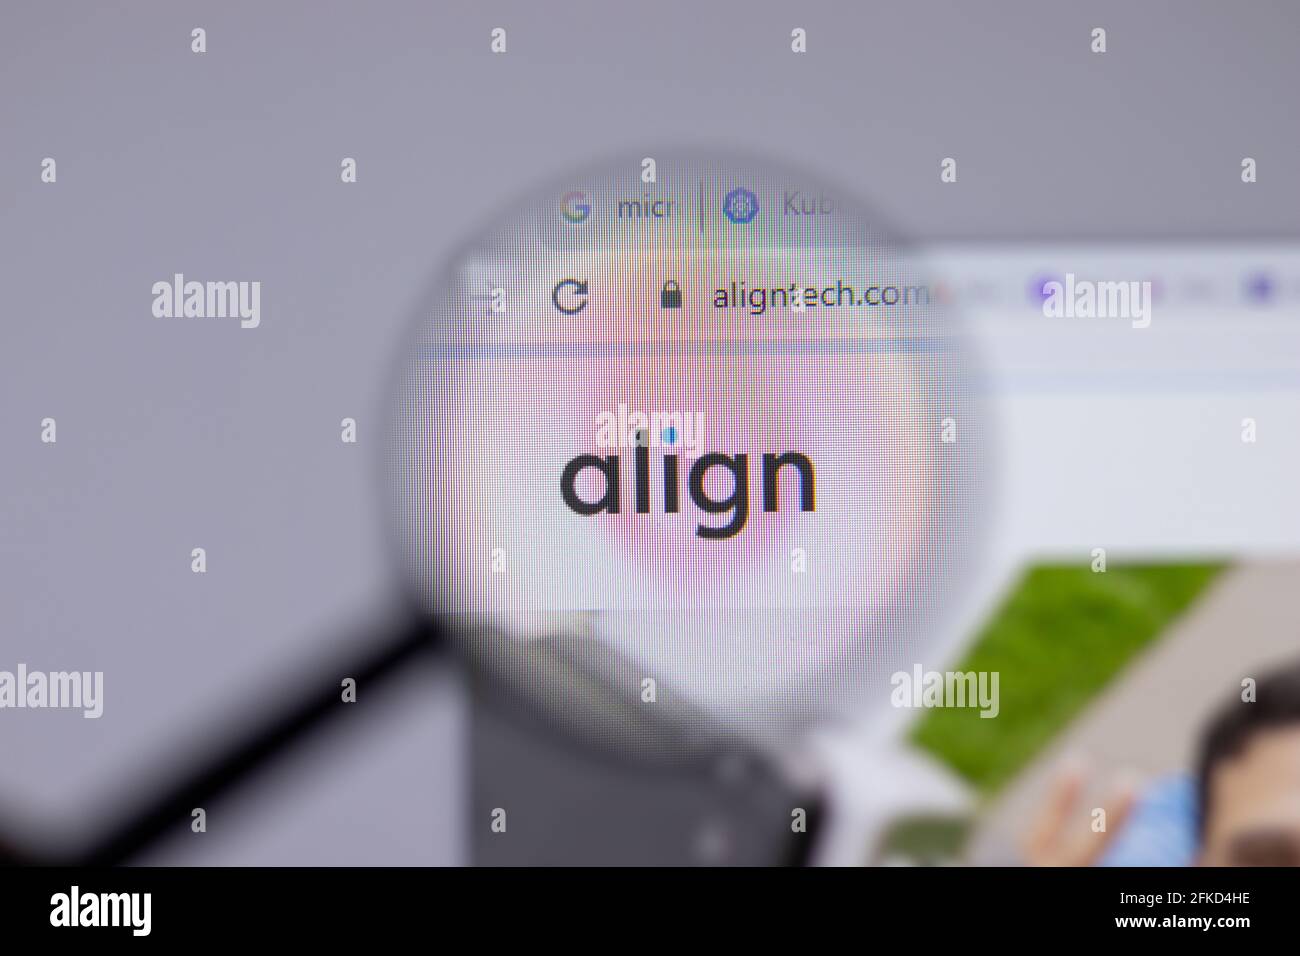 New York, USA - 26 aprile 2021: Primo piano del logo della società Align Technology sulla pagina del sito Web, Editoriale illustrativo Foto Stock